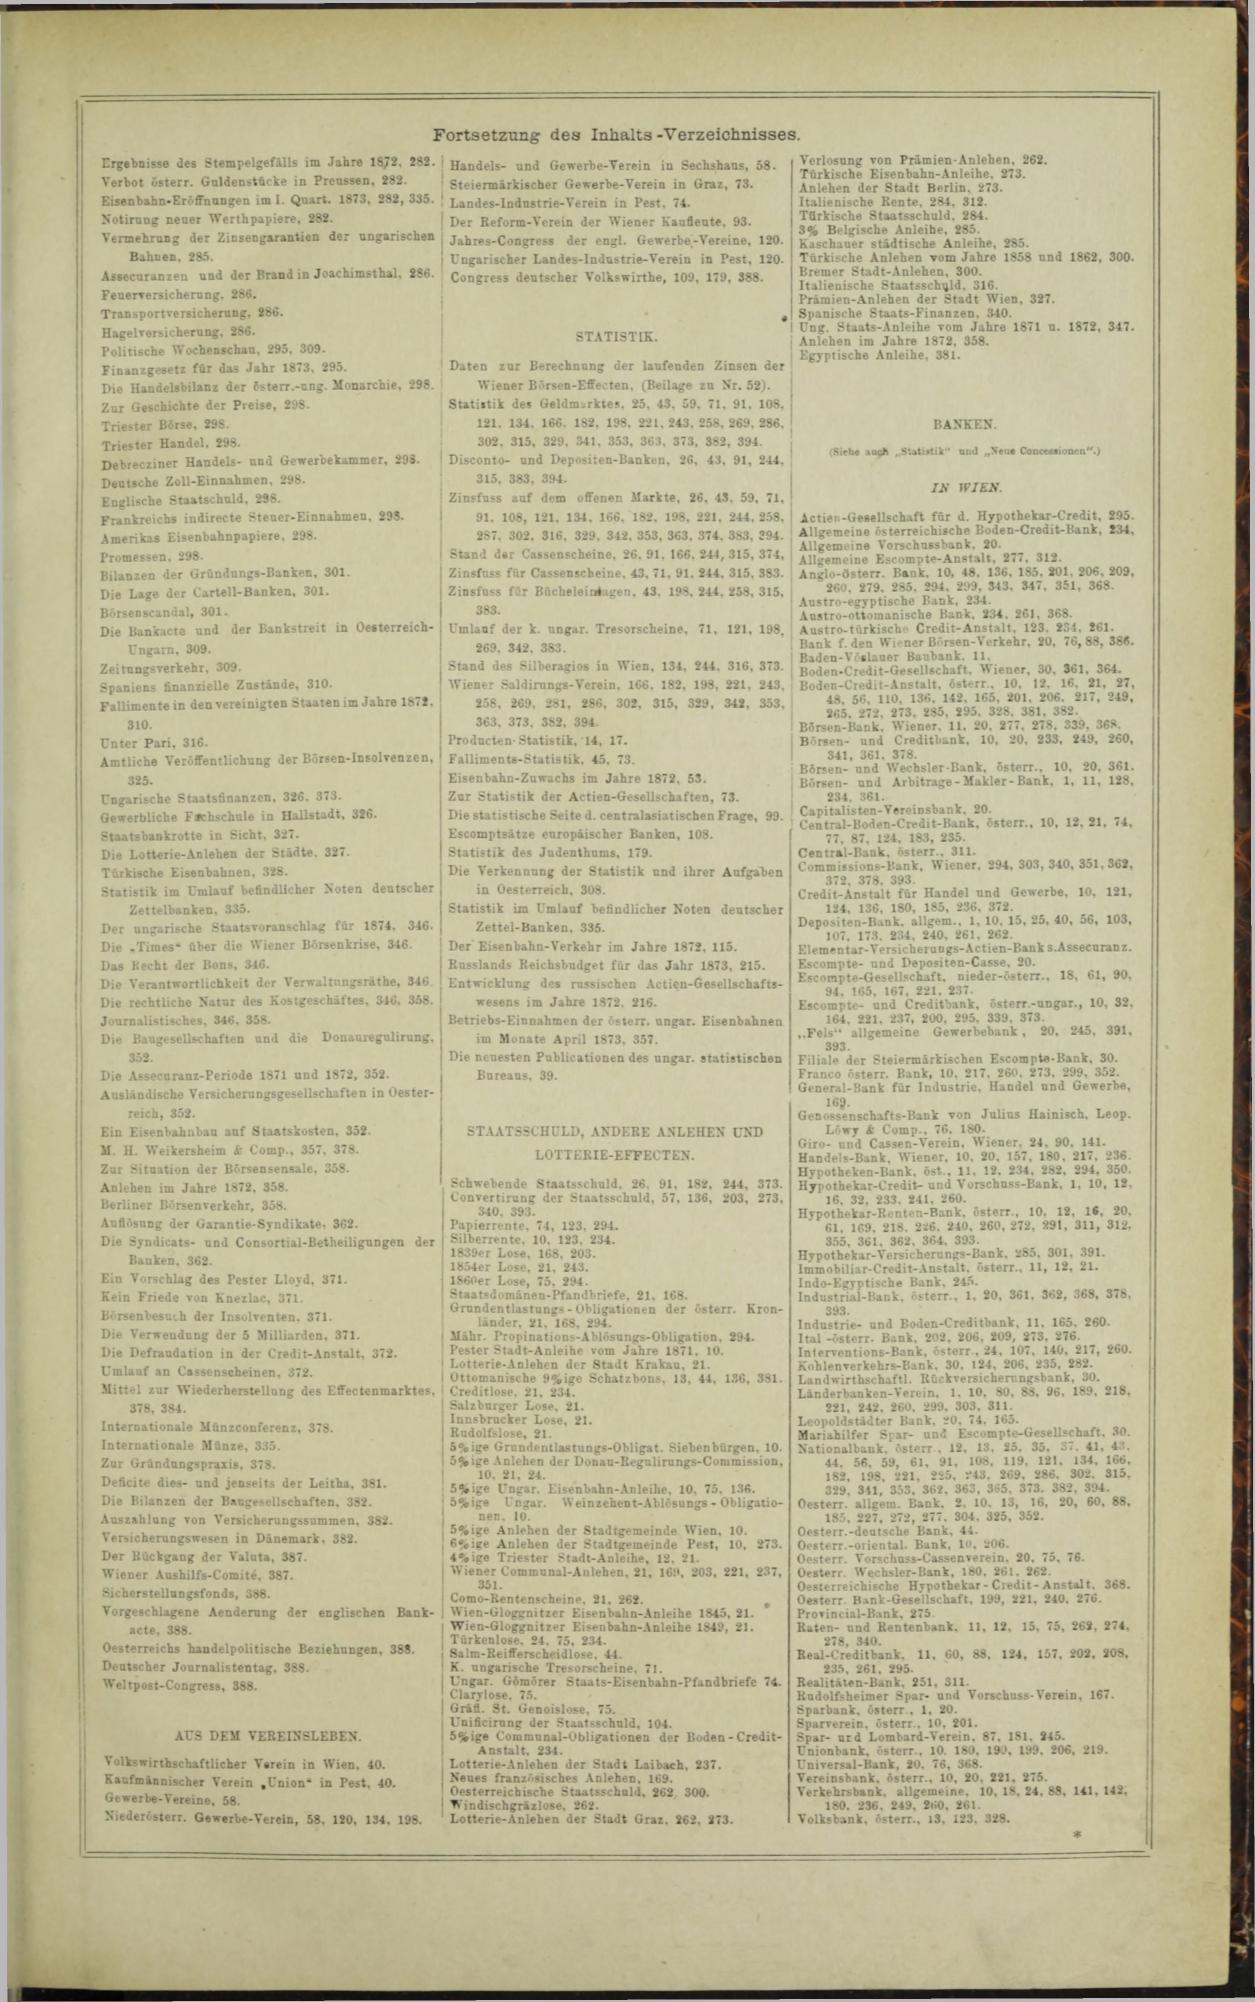 Der Tresor 05.02.1873 - Seite 19